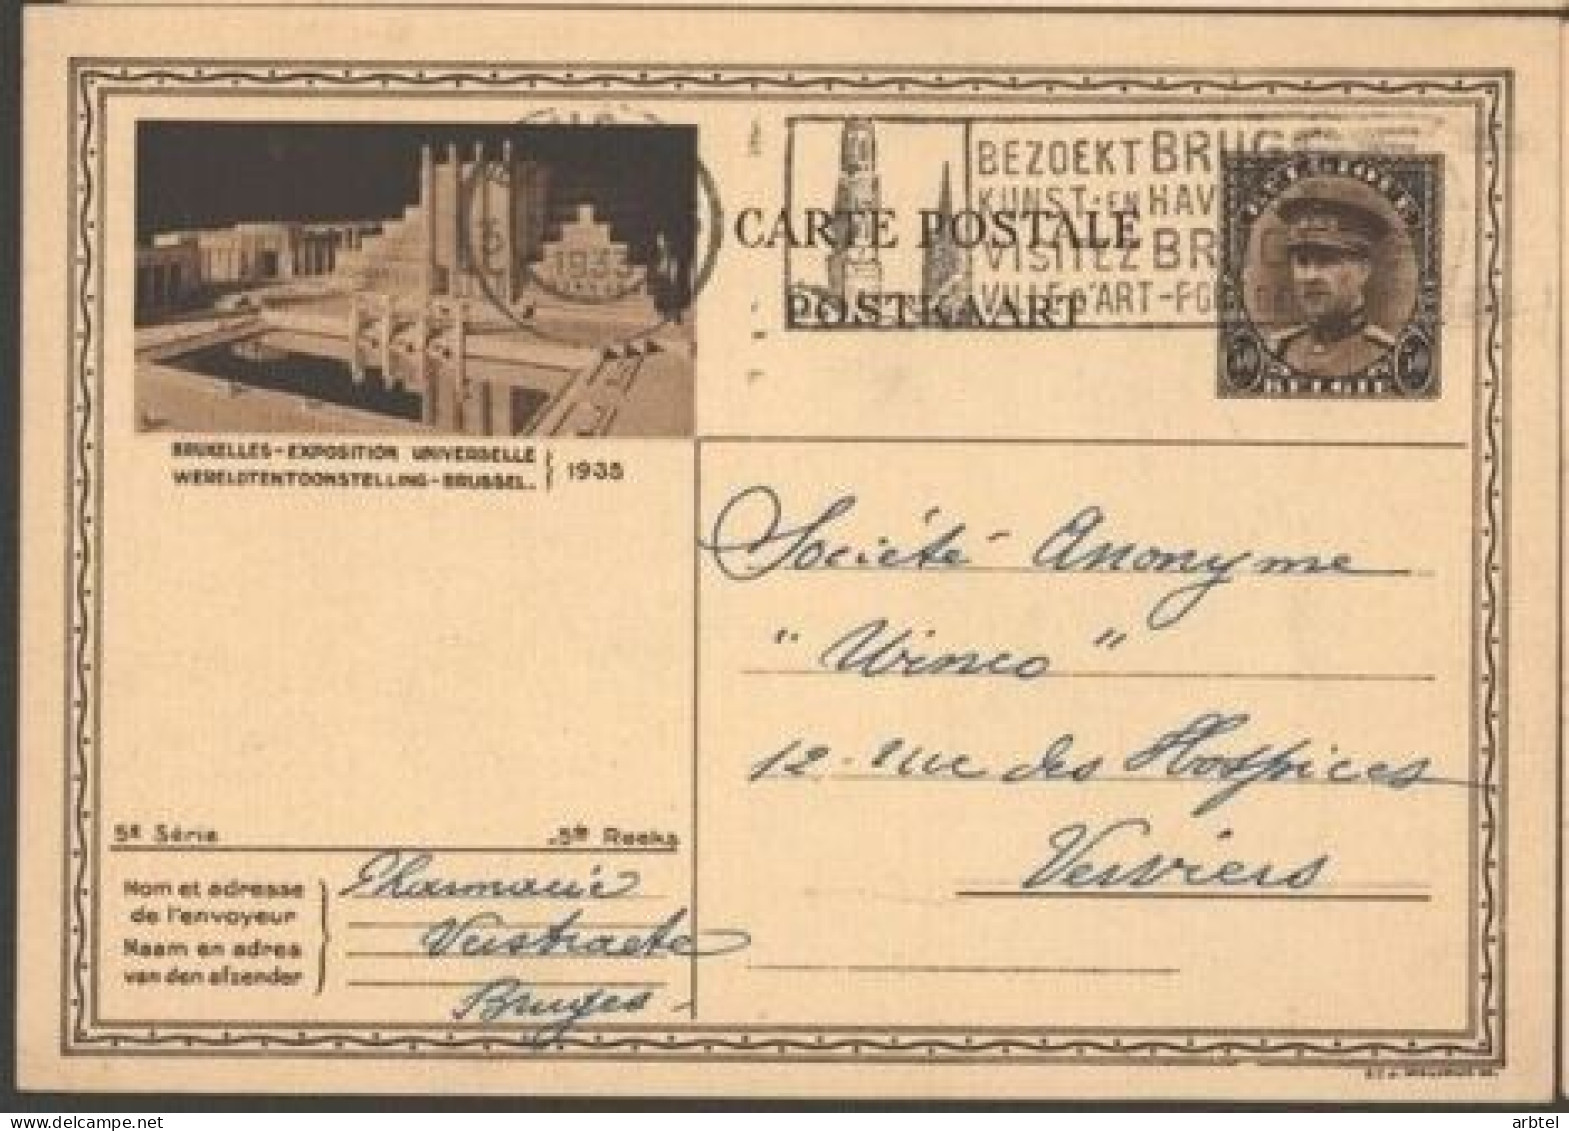 BELGICA ENTERO POSTAL EXPOSITION BRUXELLES 1935 MAT BRUGEE - 1935 – Brüssel (Belgien)